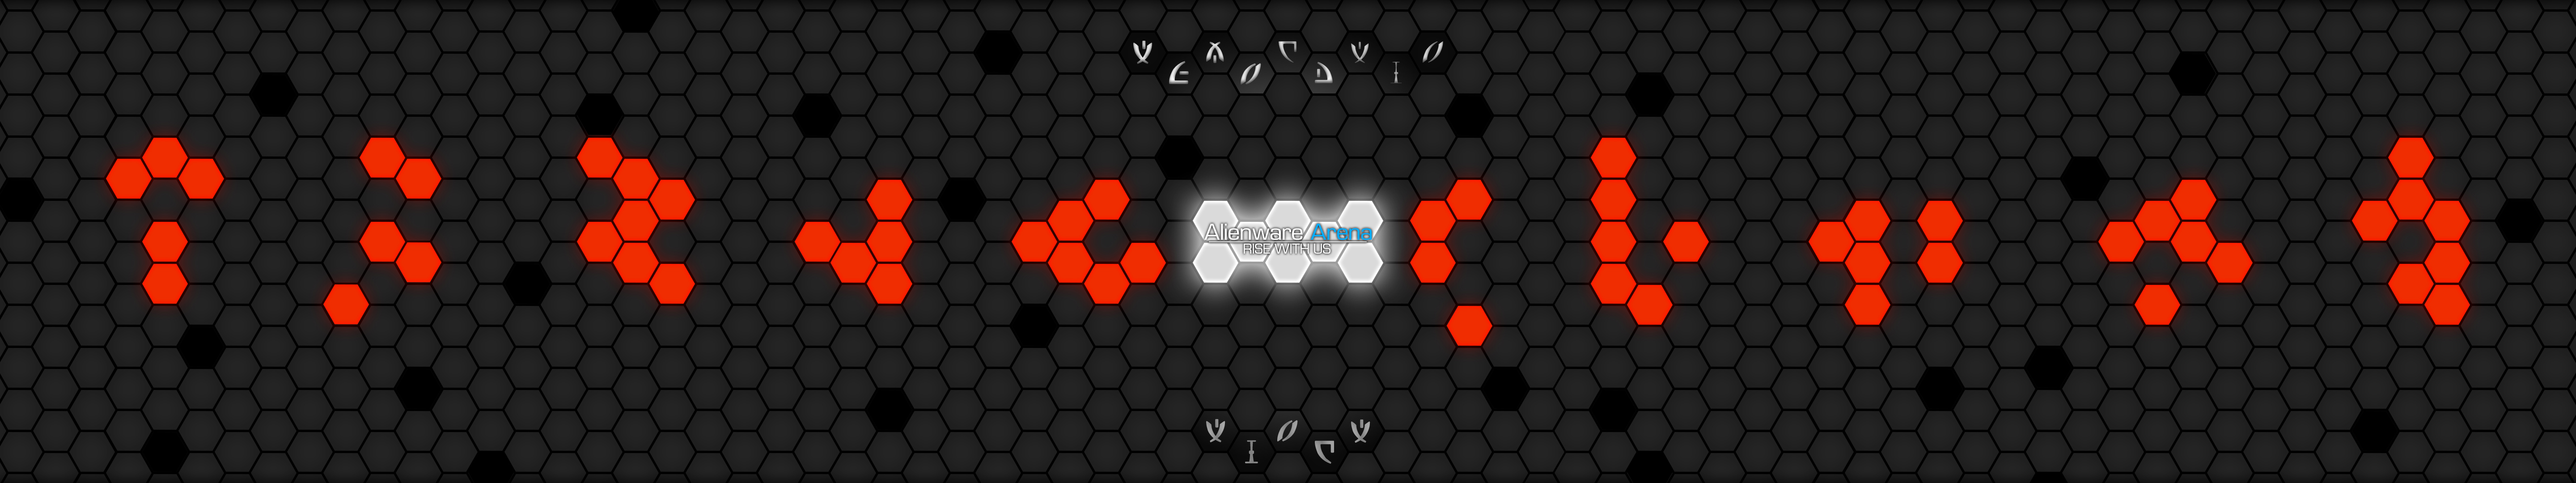 Hive Wallpaper Updated Alienware Arena